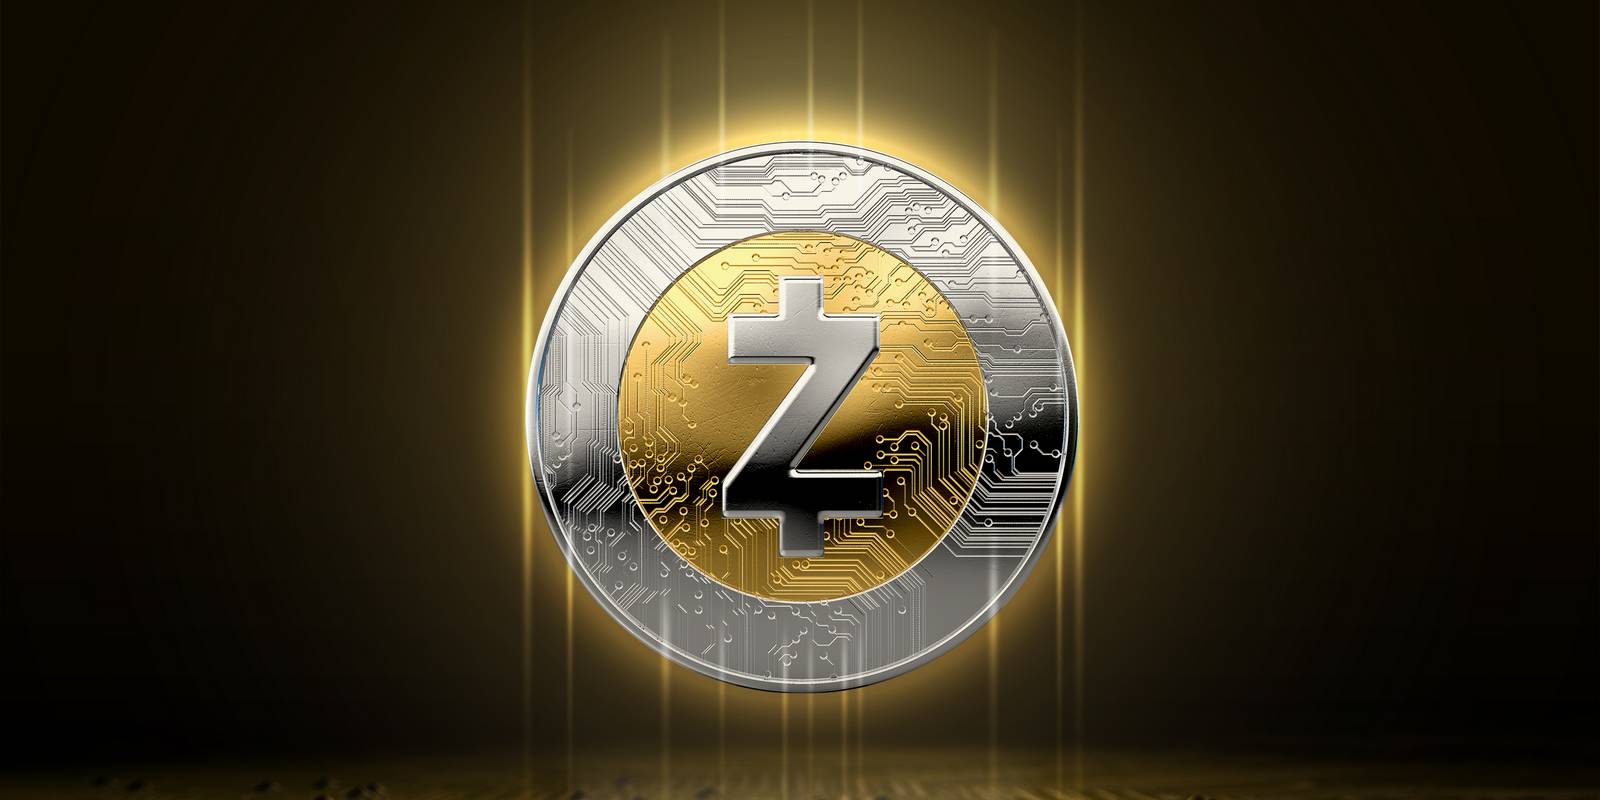 Mise à jour du réseau Zcash demain : qu’est-ce qui va changer ?